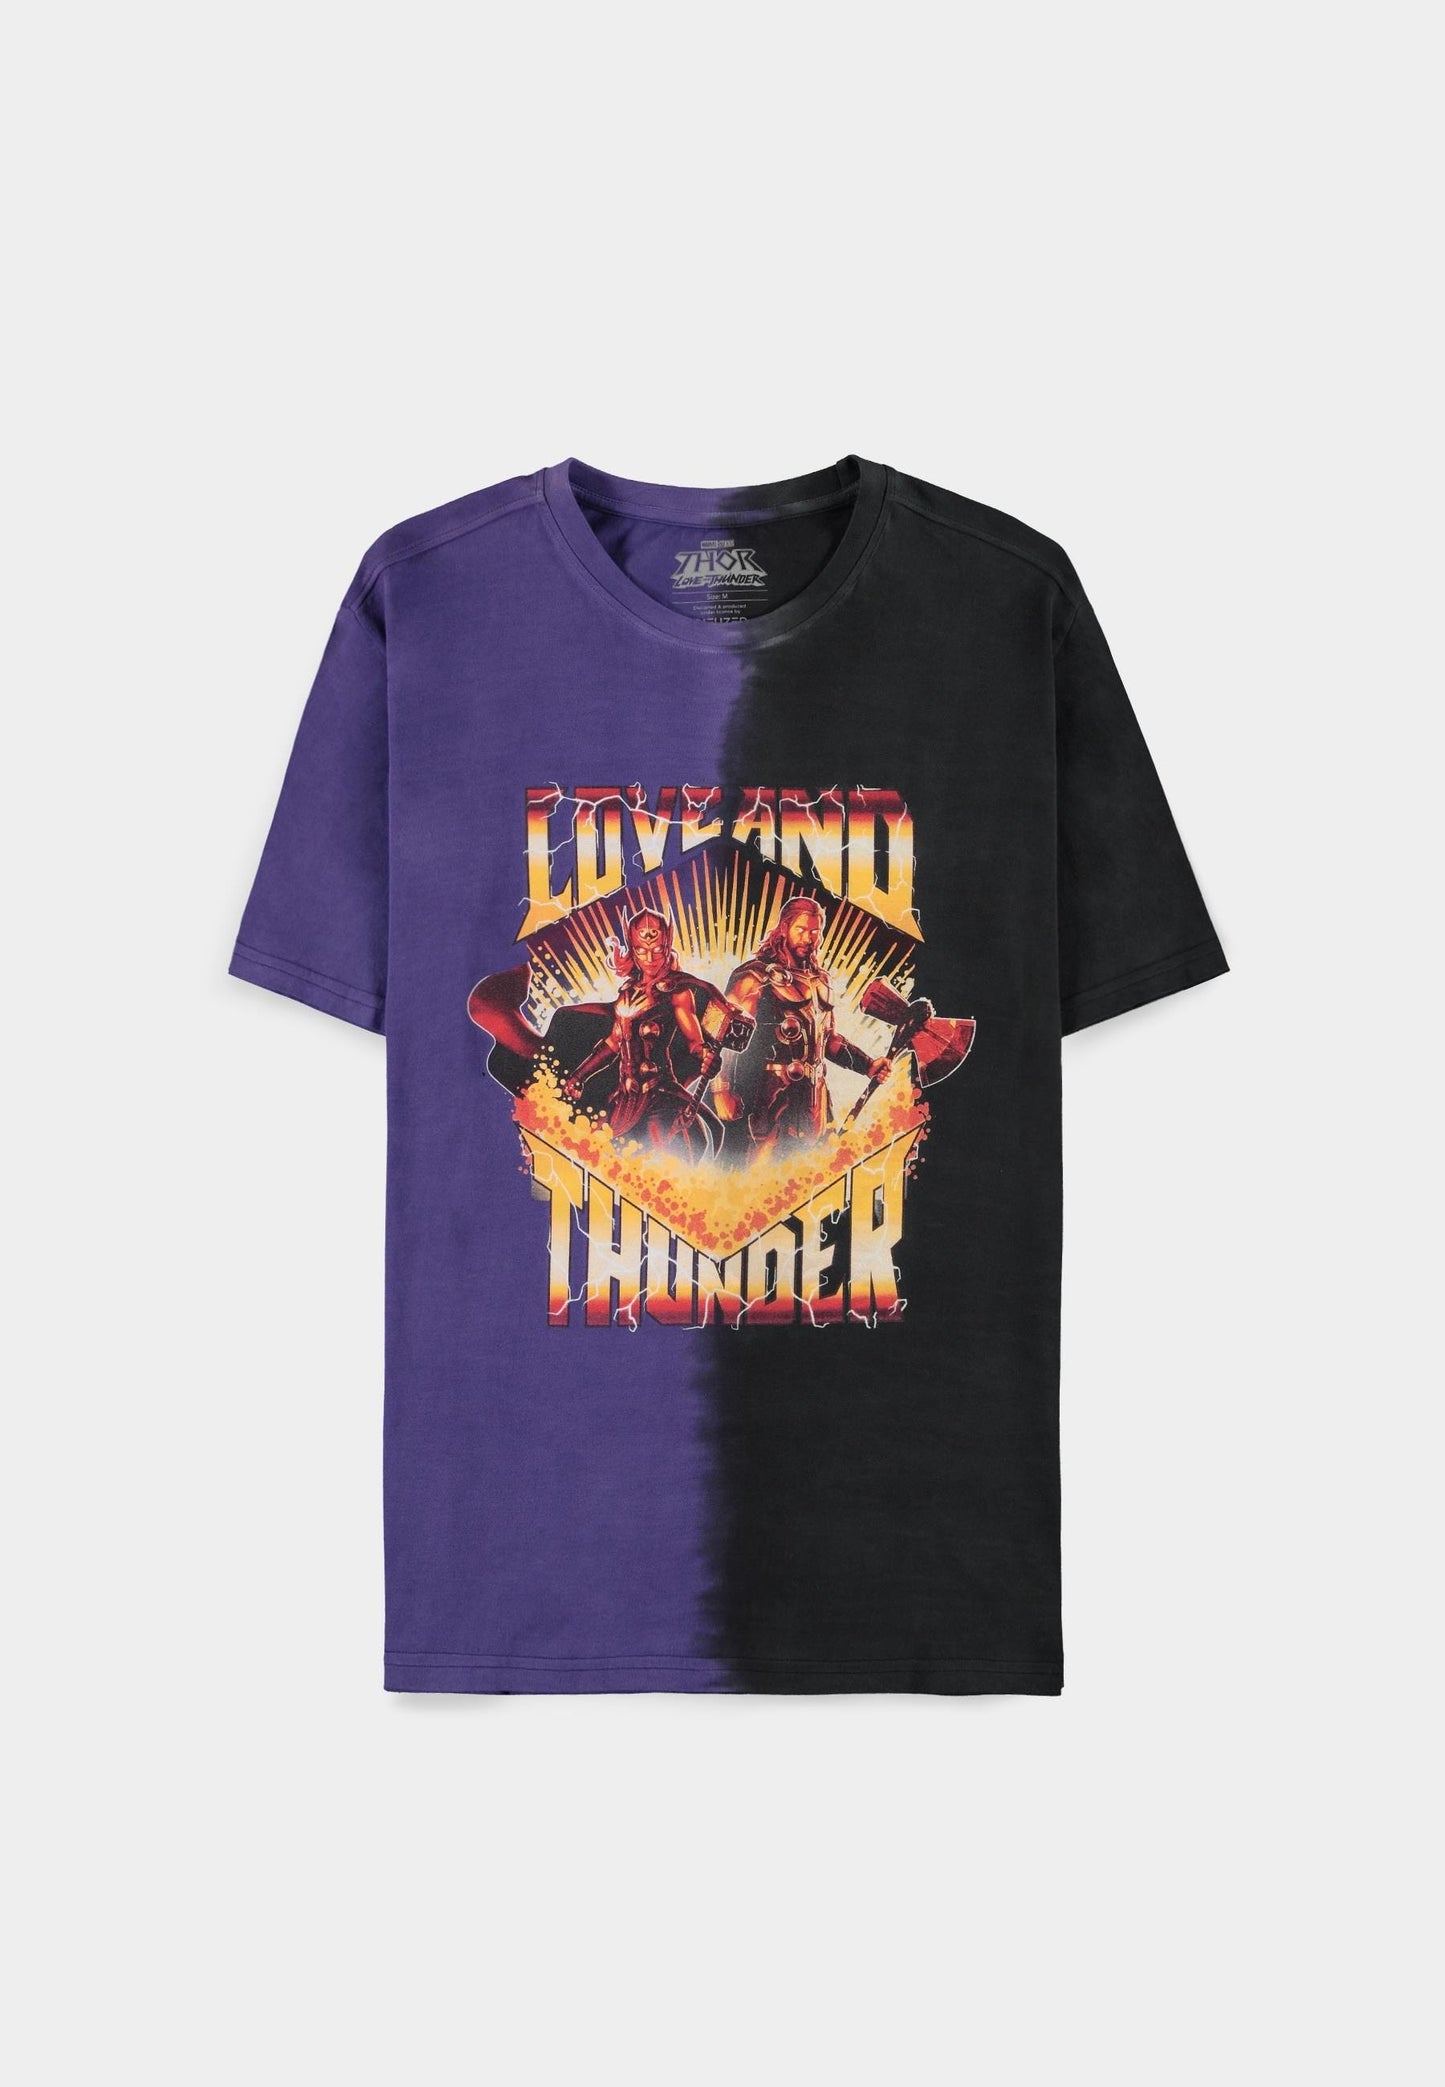 MARVEL : THOR - Love and Thunder Short Sleeved Regular Fit T-shirt